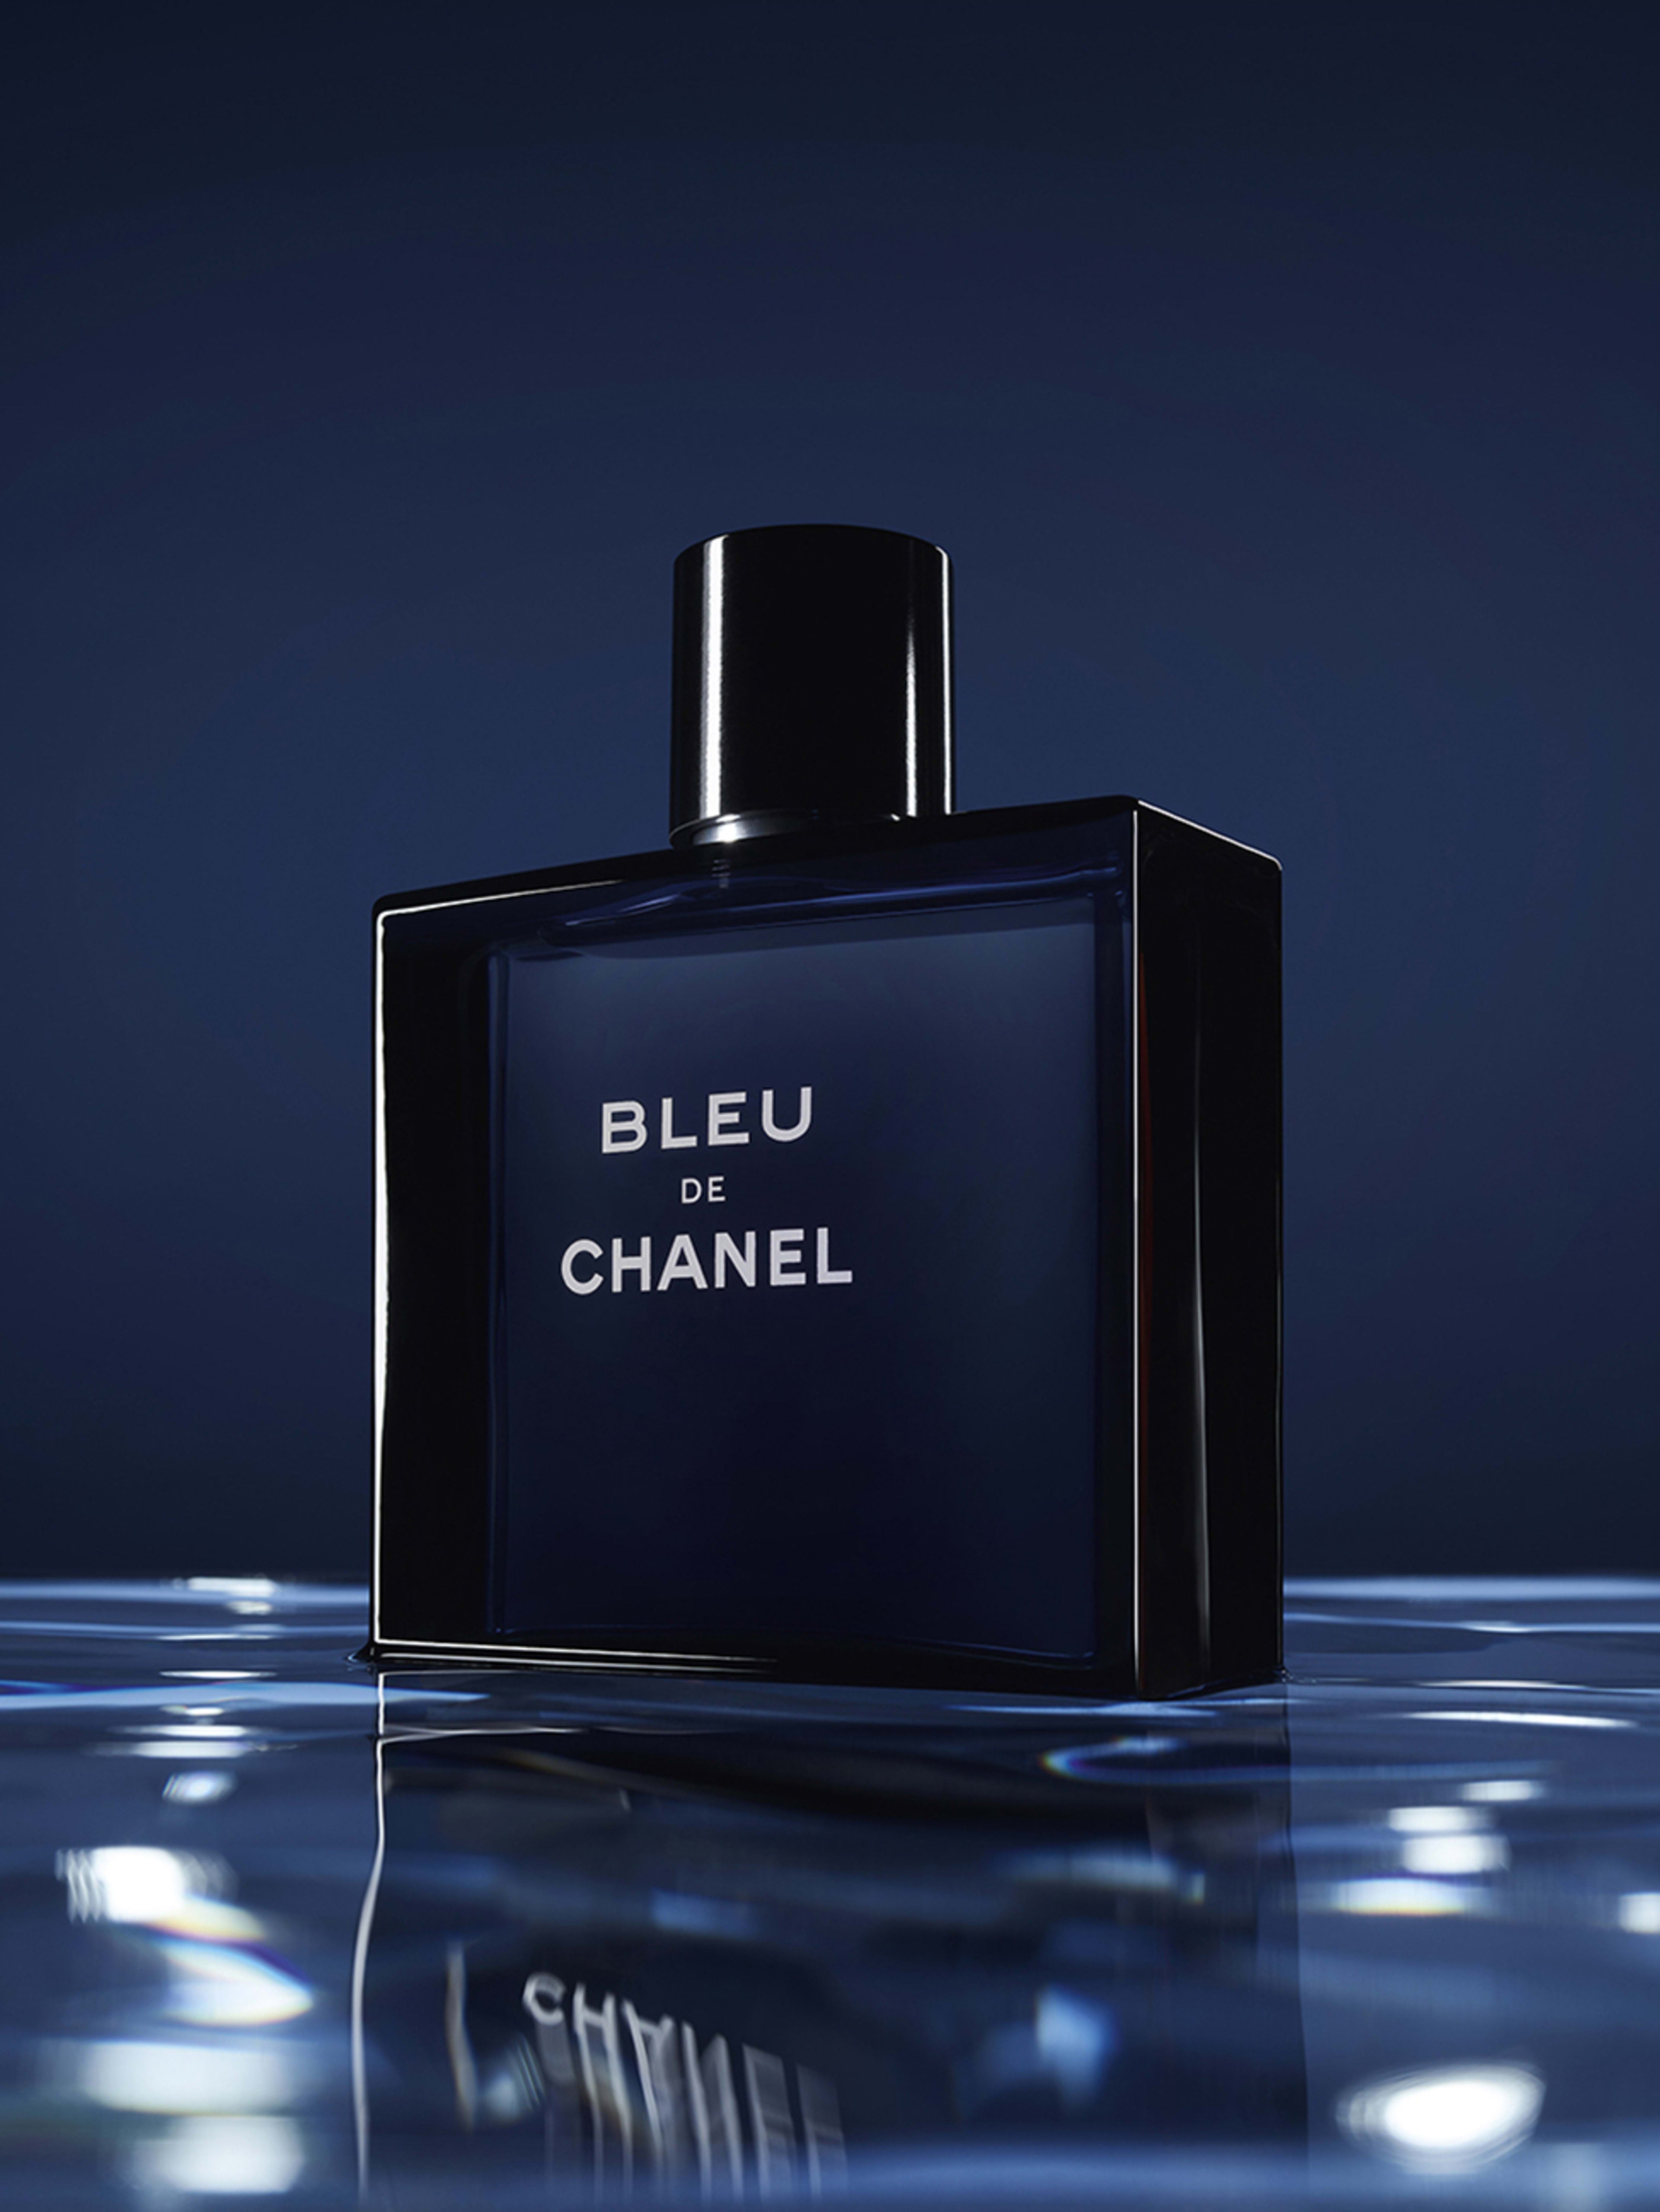 Chanel Launches Bleu de Chanel Eau de Parfum for Men – The Fashionisto